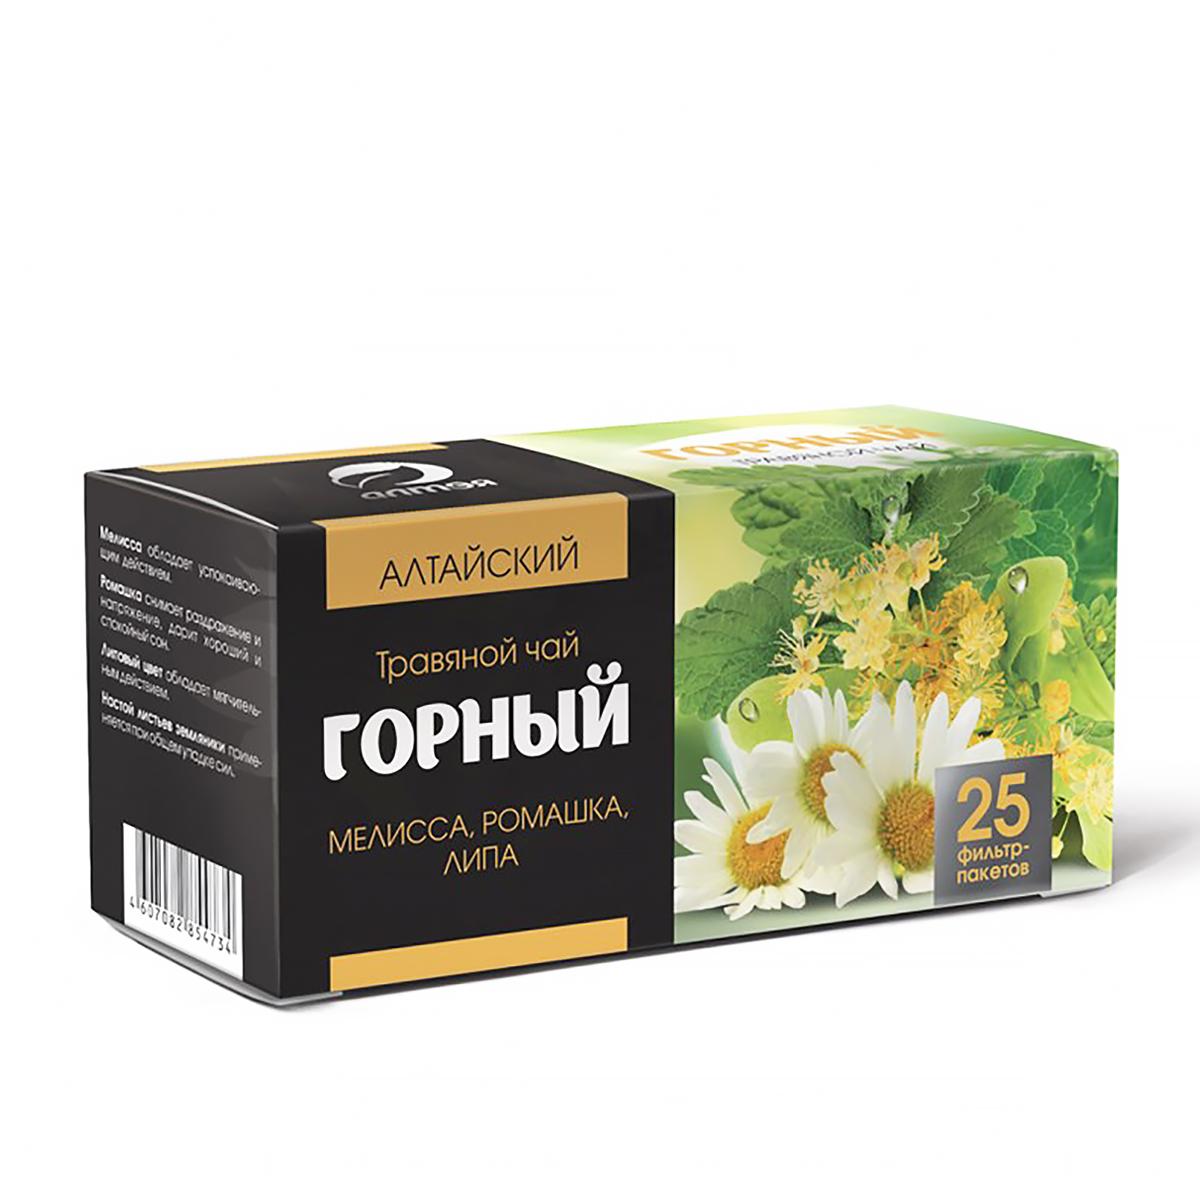 Чай травяной Горный в фильтр-пакетах, 25 шт х 1.2 г